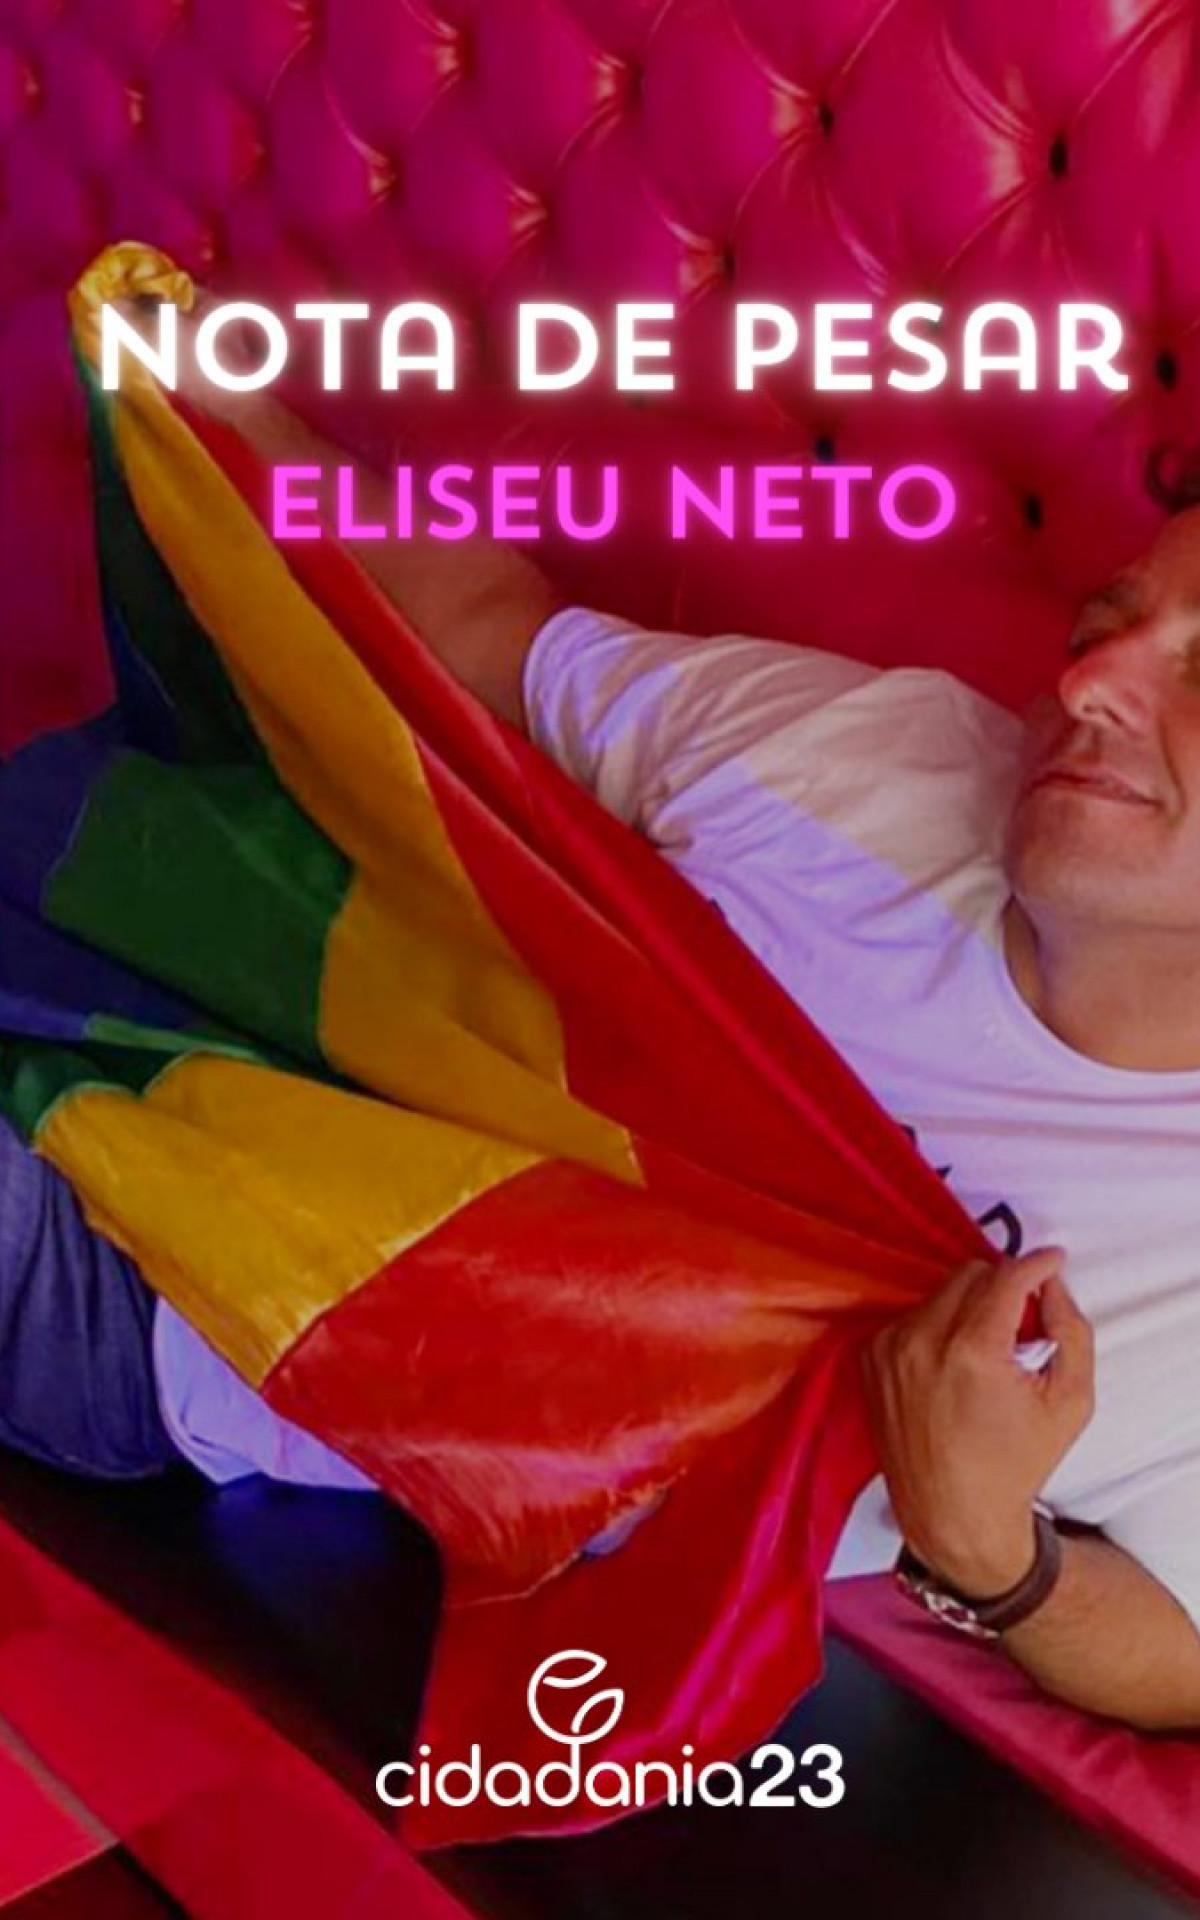 Eliseu Neto era ativista LGBTQIA+ líder de ação que criminalizou homofobia no Brasil - Divulgação